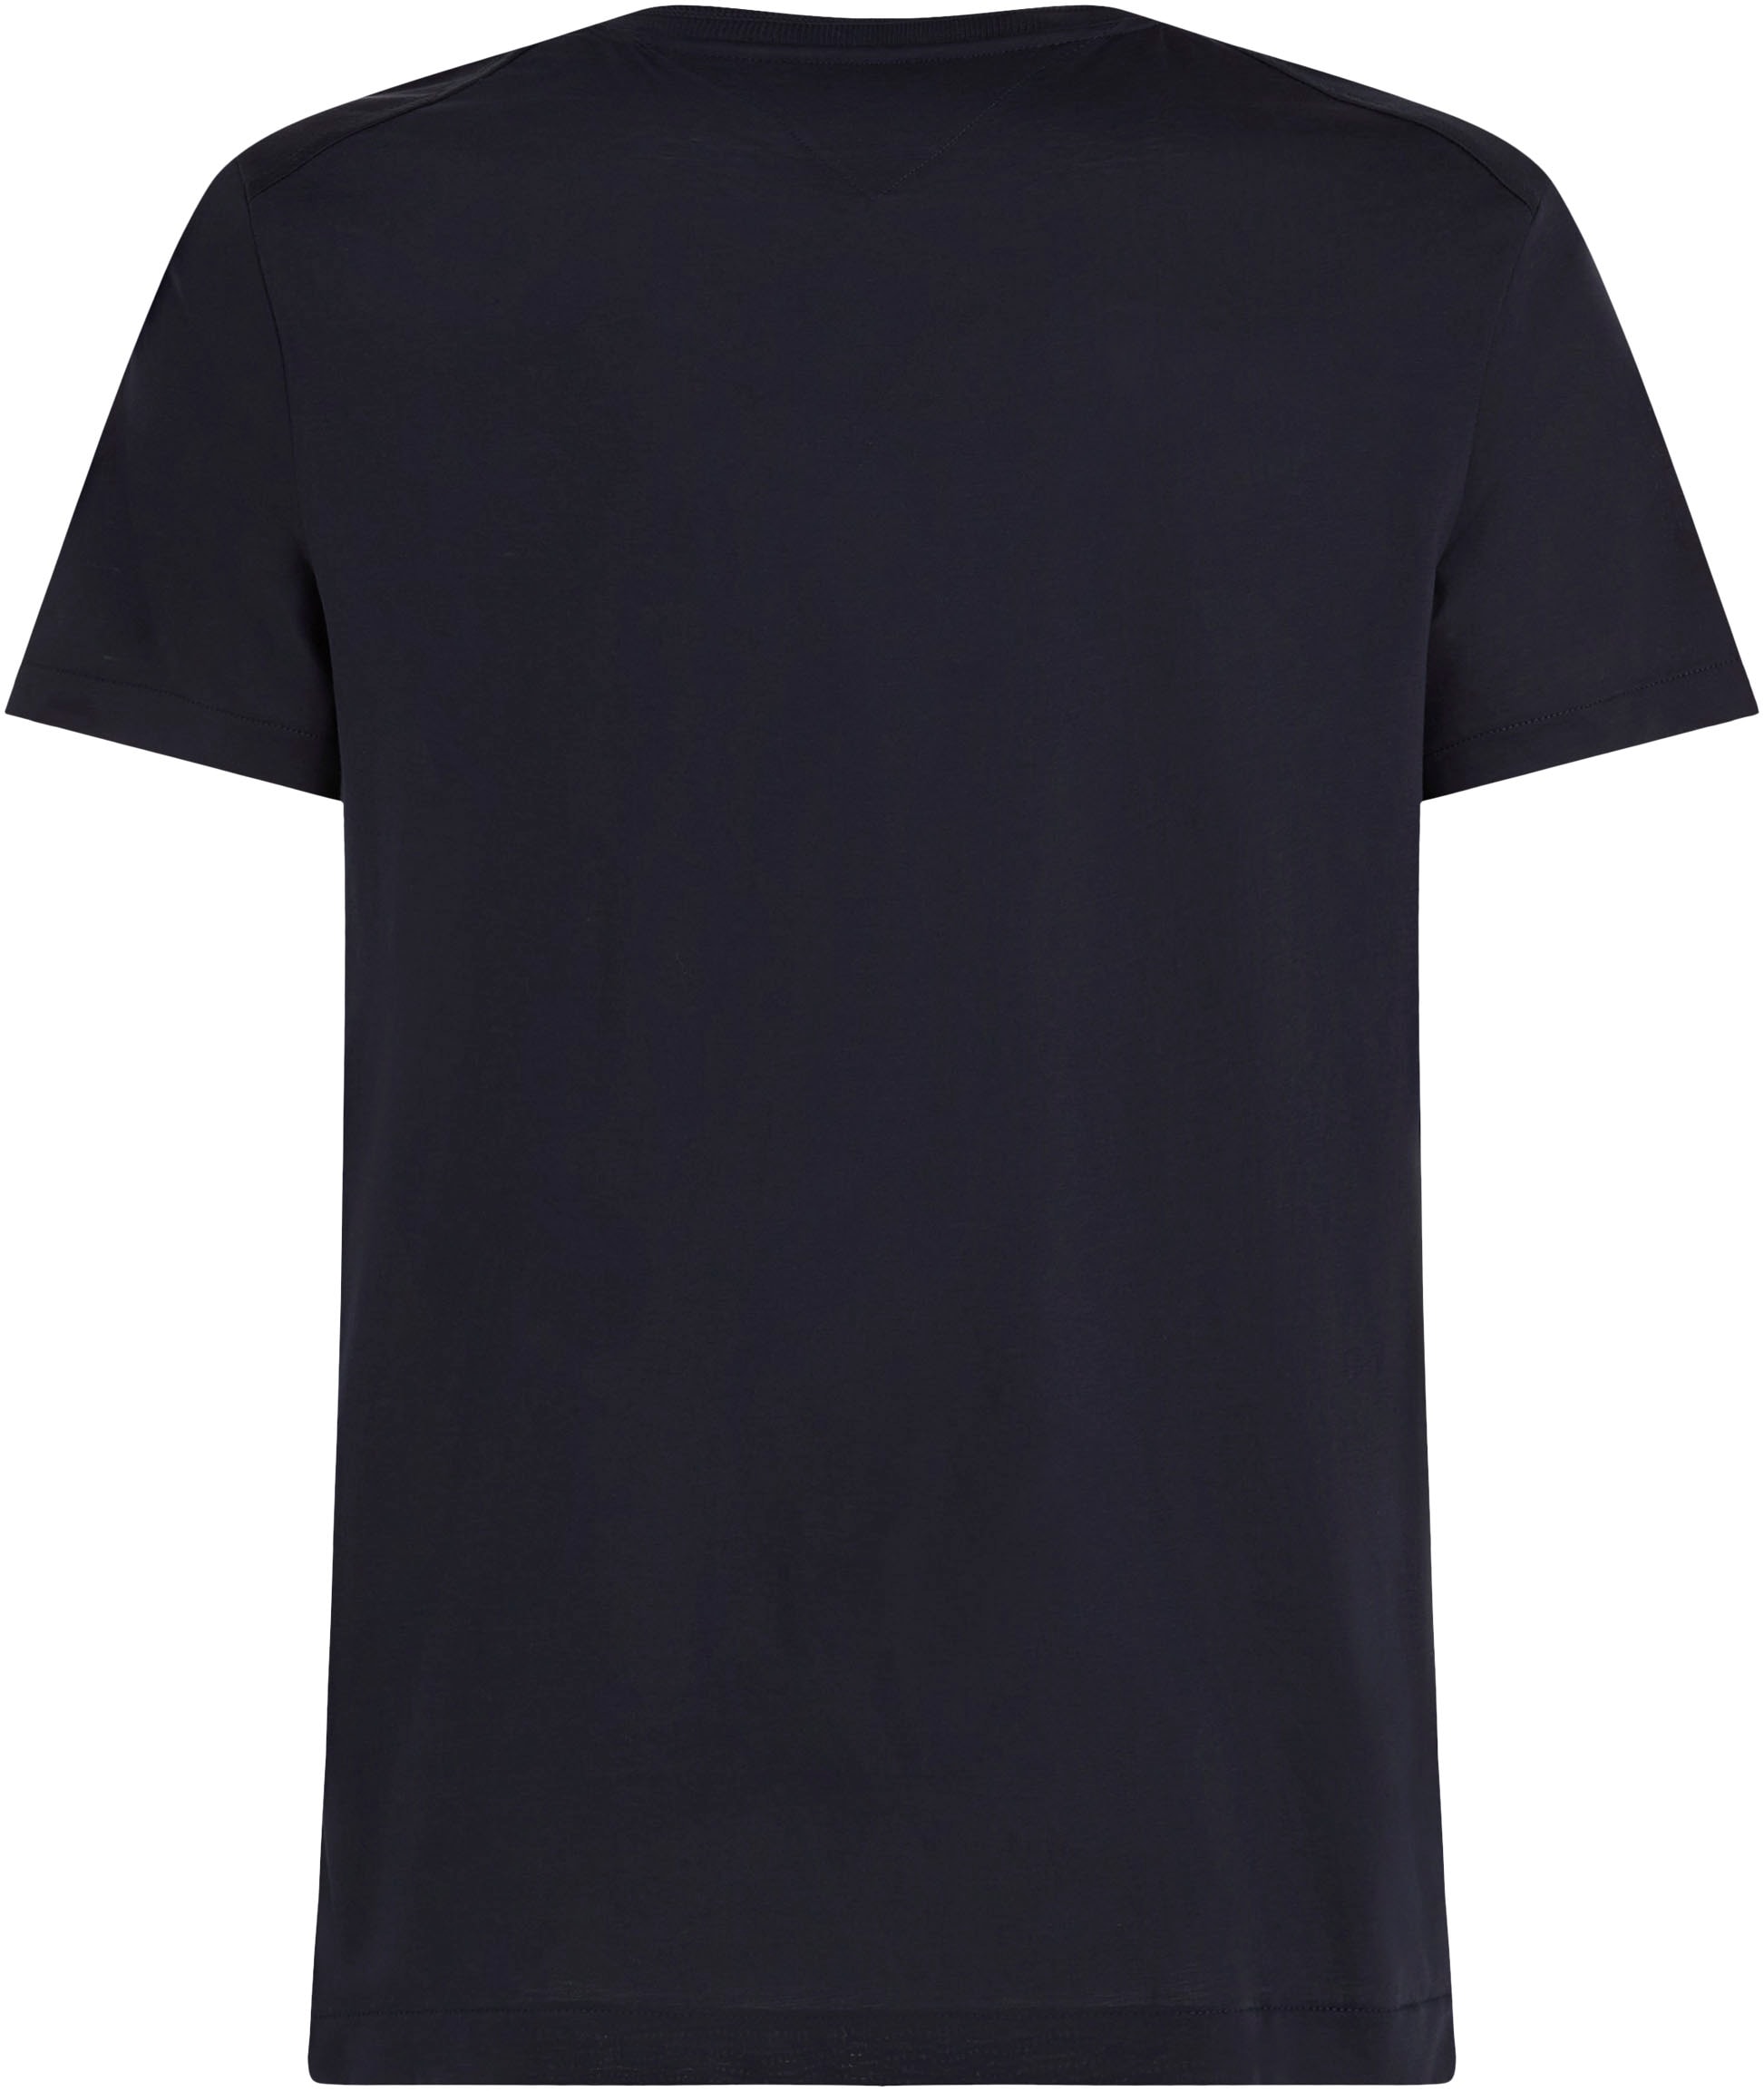 MERCERIZED Tommy TAILORED Hilfiger TEE«, »DC online bestellen bei im ESSENTIAL T-Shirt klassischen Basic-Look OTTO